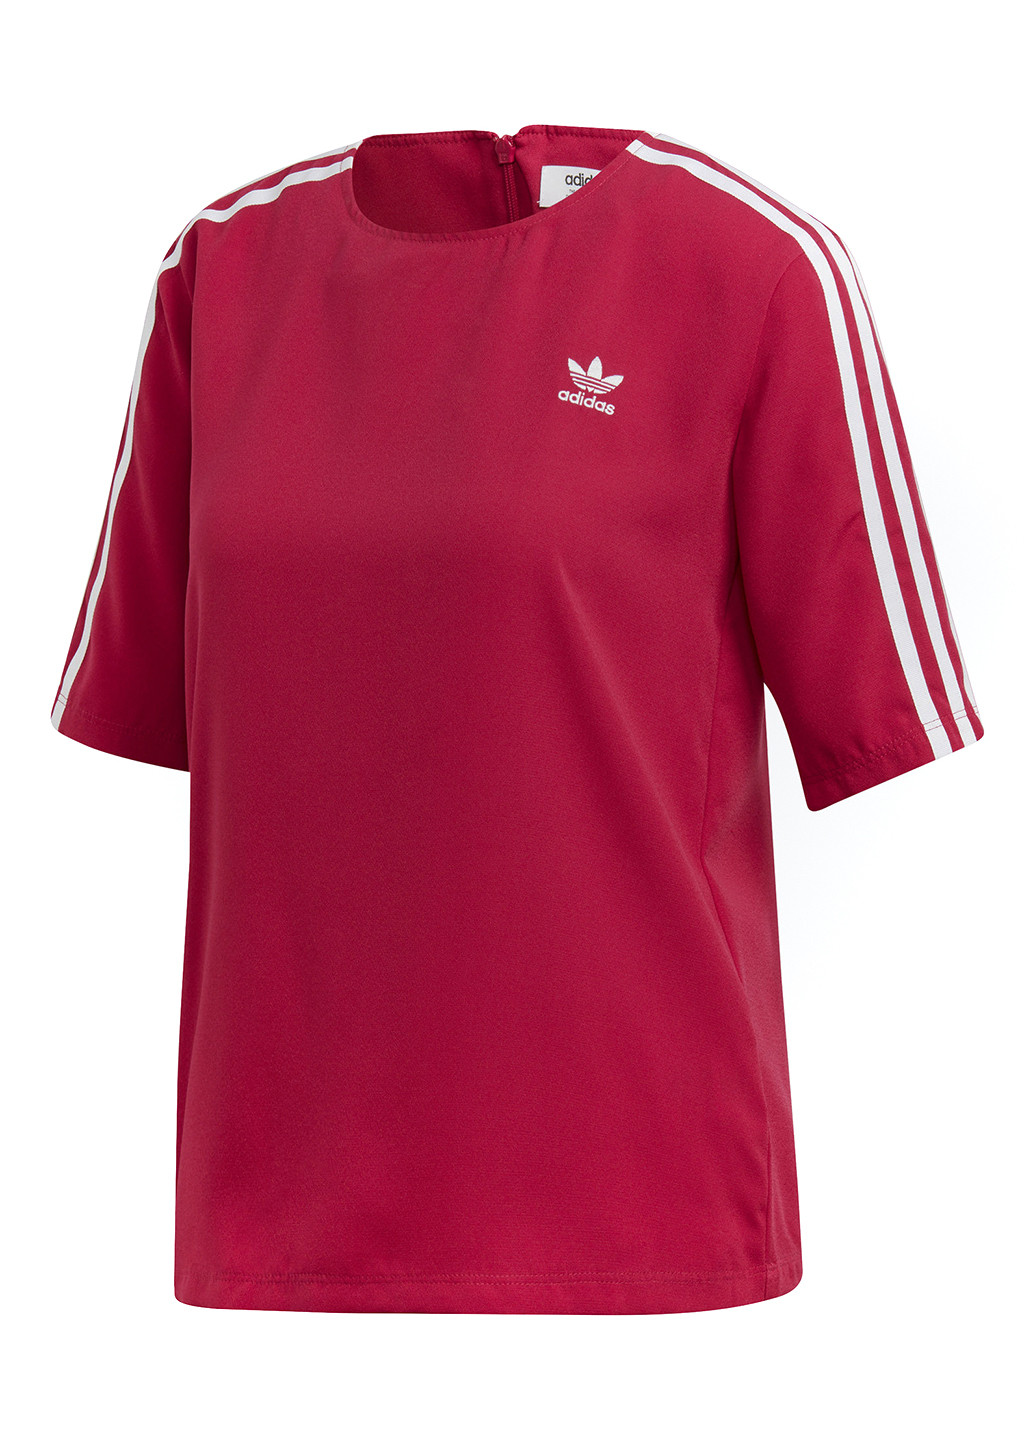 Червона літня футболка з коротким рукавом adidas